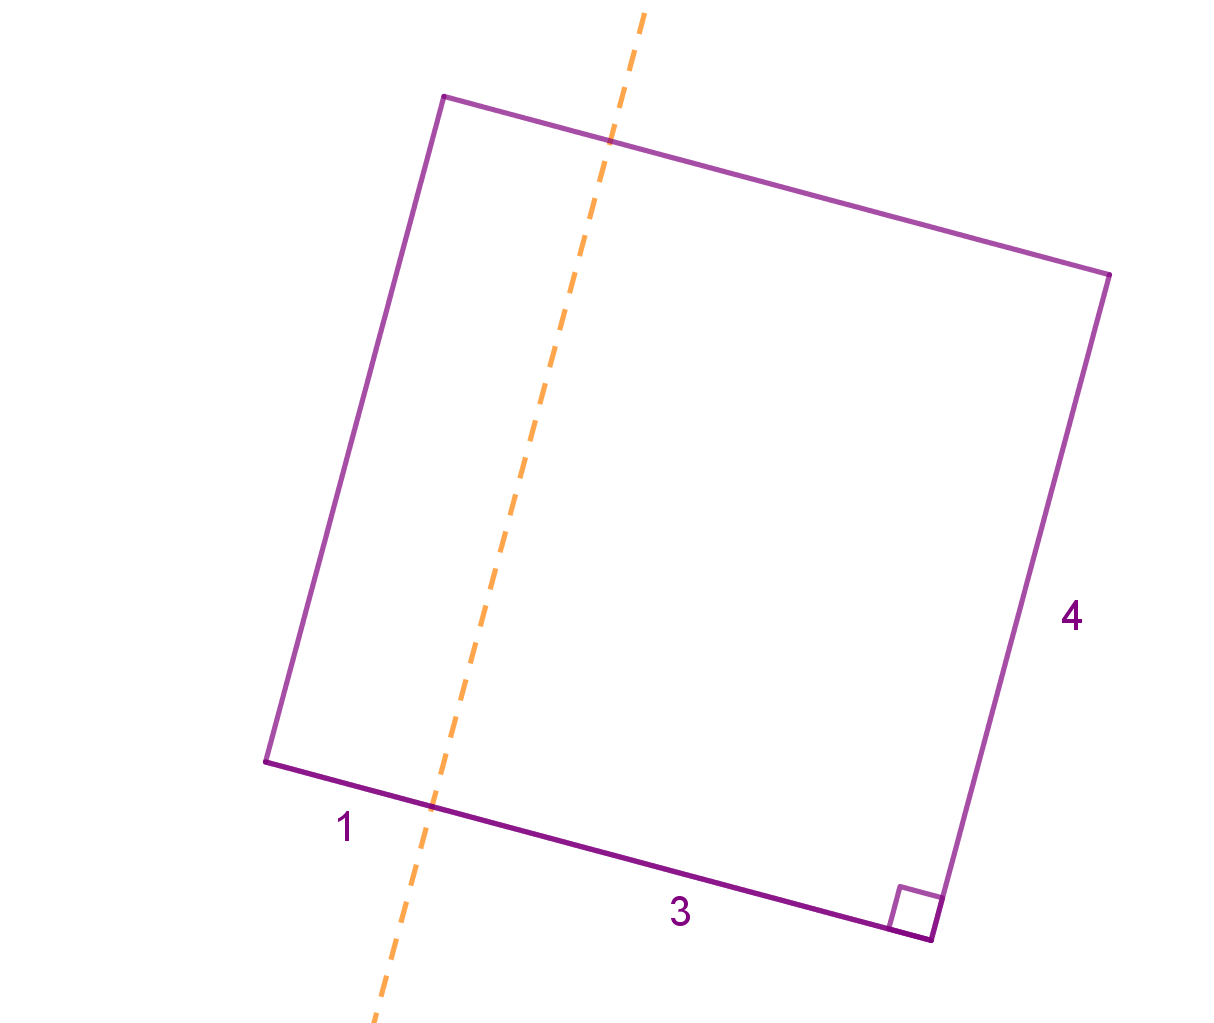 Kvadrat stranice 4 rotira oko osi paralelne strani i udaljene od nje 1, odnosno 3.